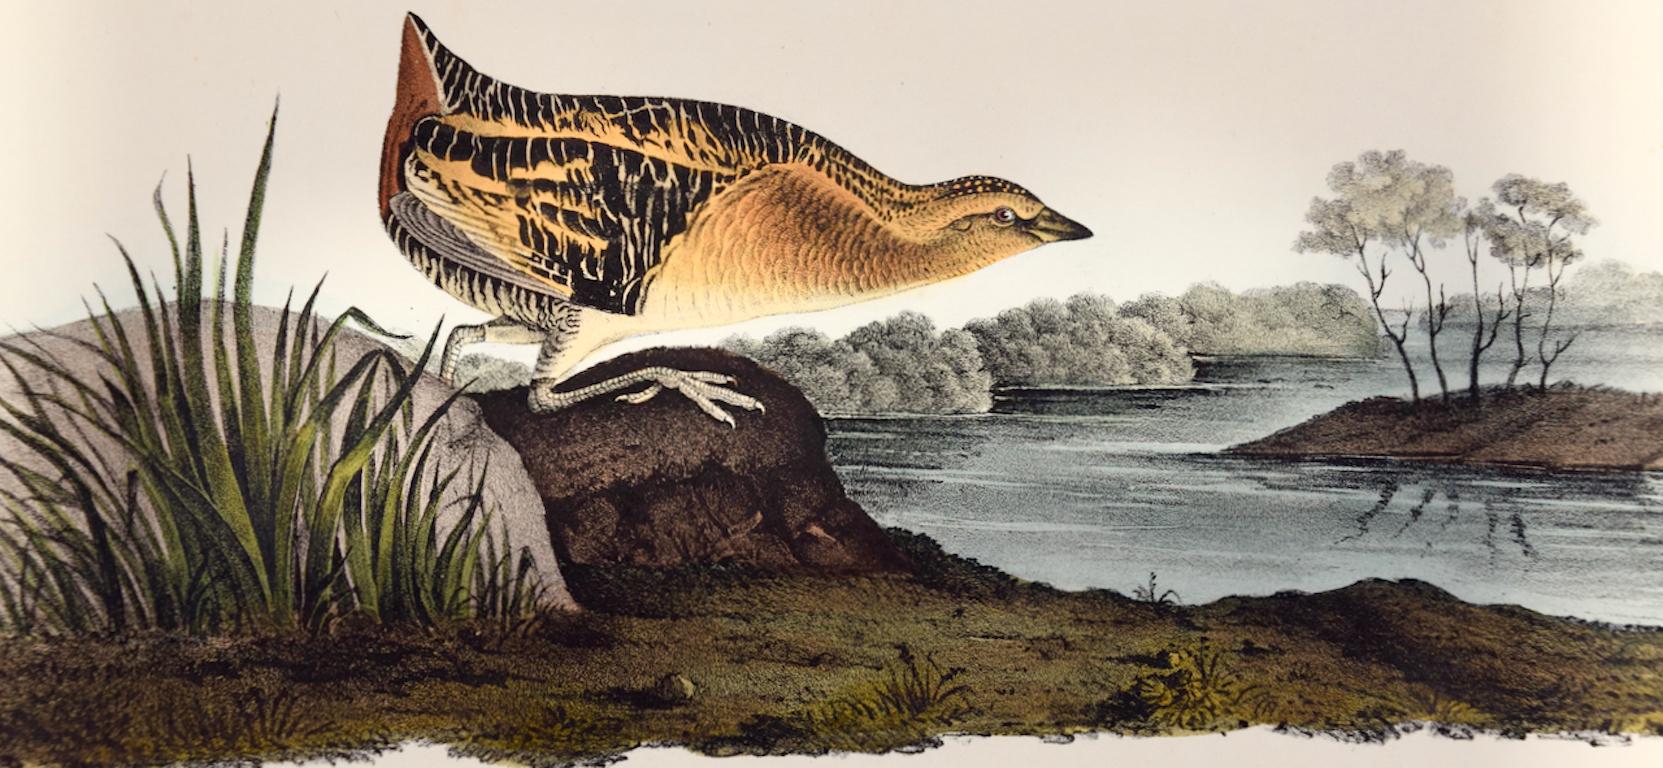 Oiseau de cheminée à poils longs jaune : Lithographie originale d'Audubon du 19e siècle colorée à la main - Naturalisme Print par John James Audubon